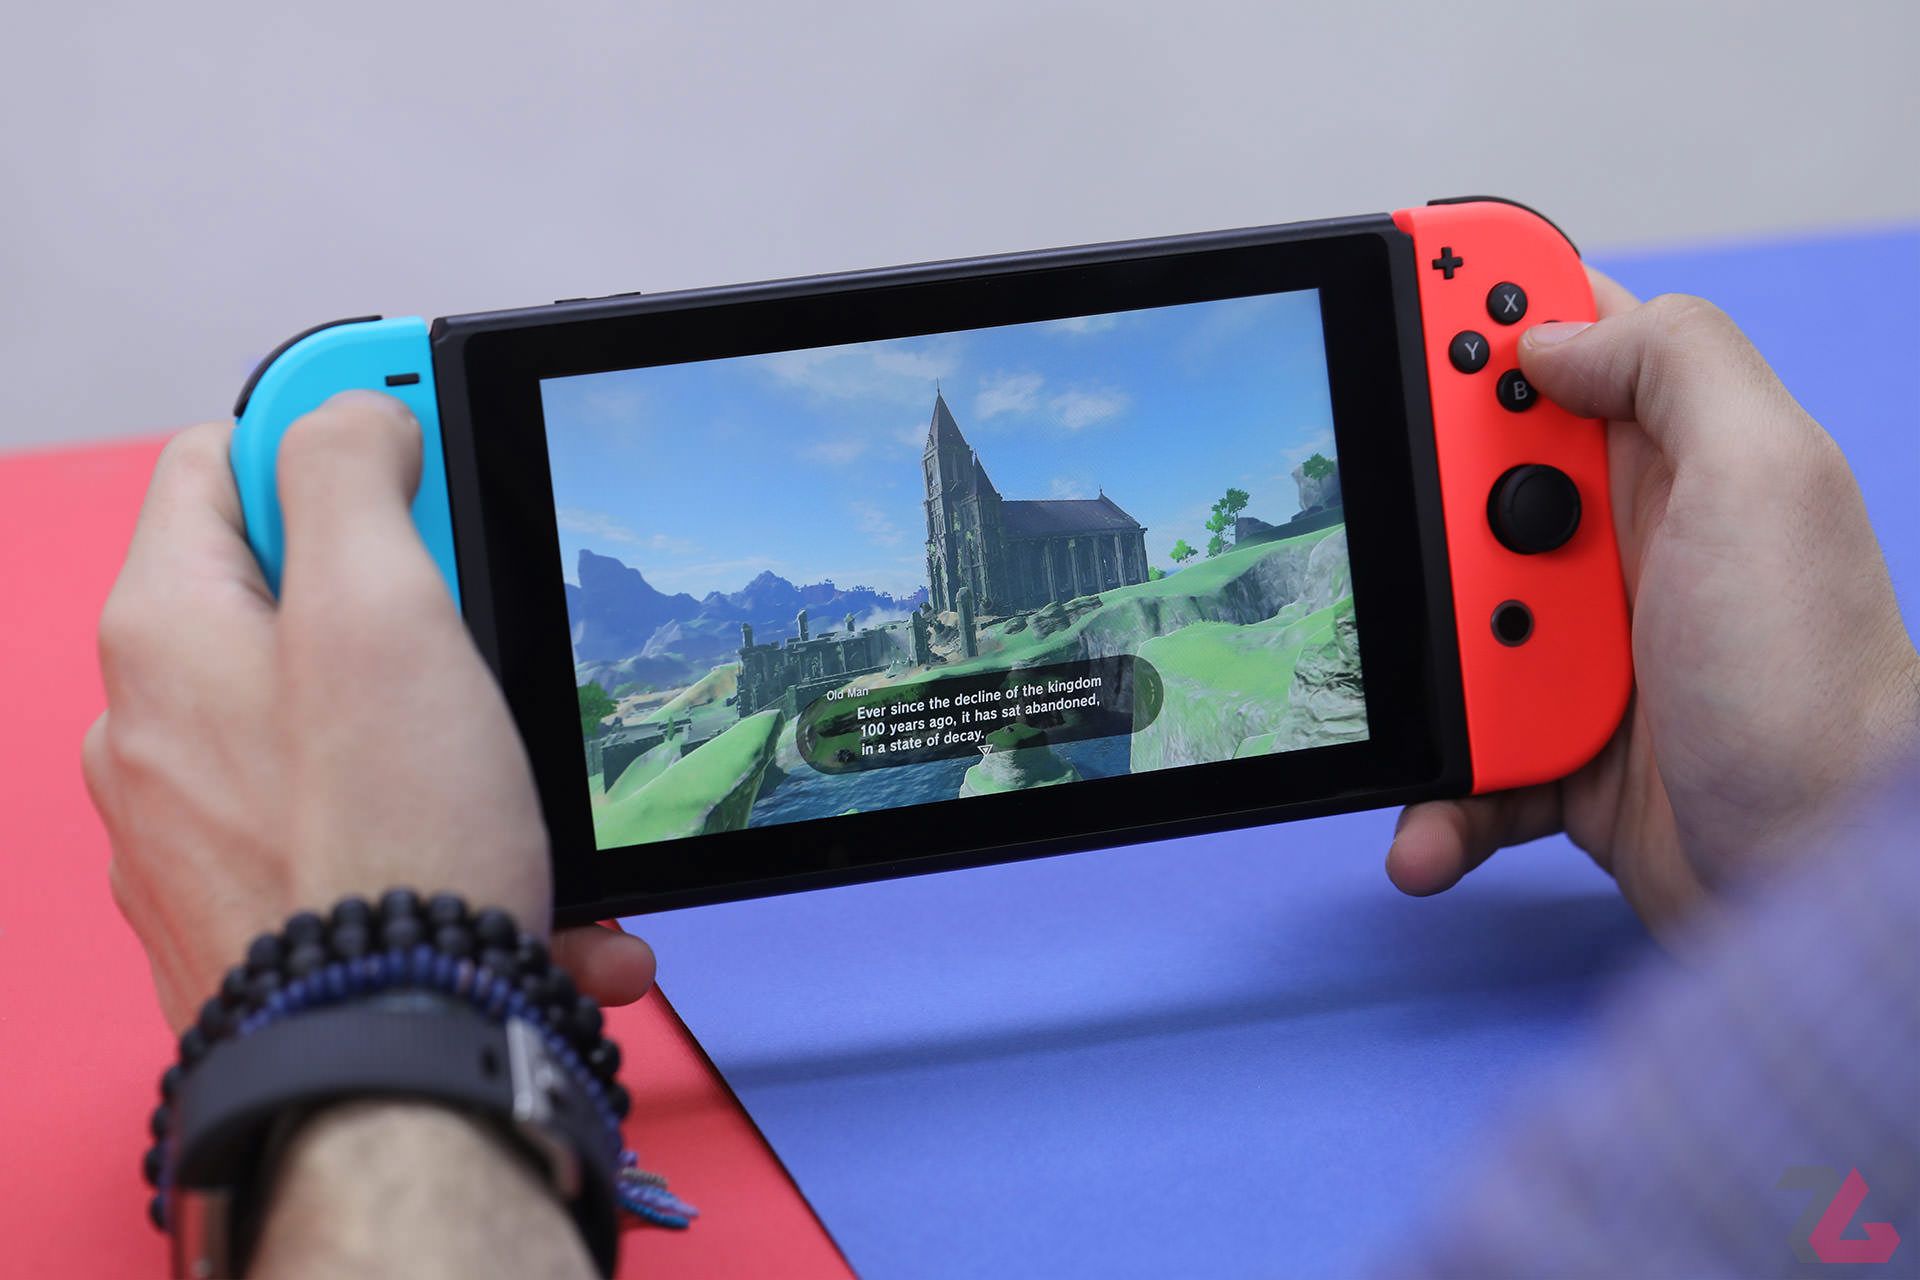 کنسول نینتندو سوییچ / Nintendo Switch در دست درحال اجرای بازی زلدا